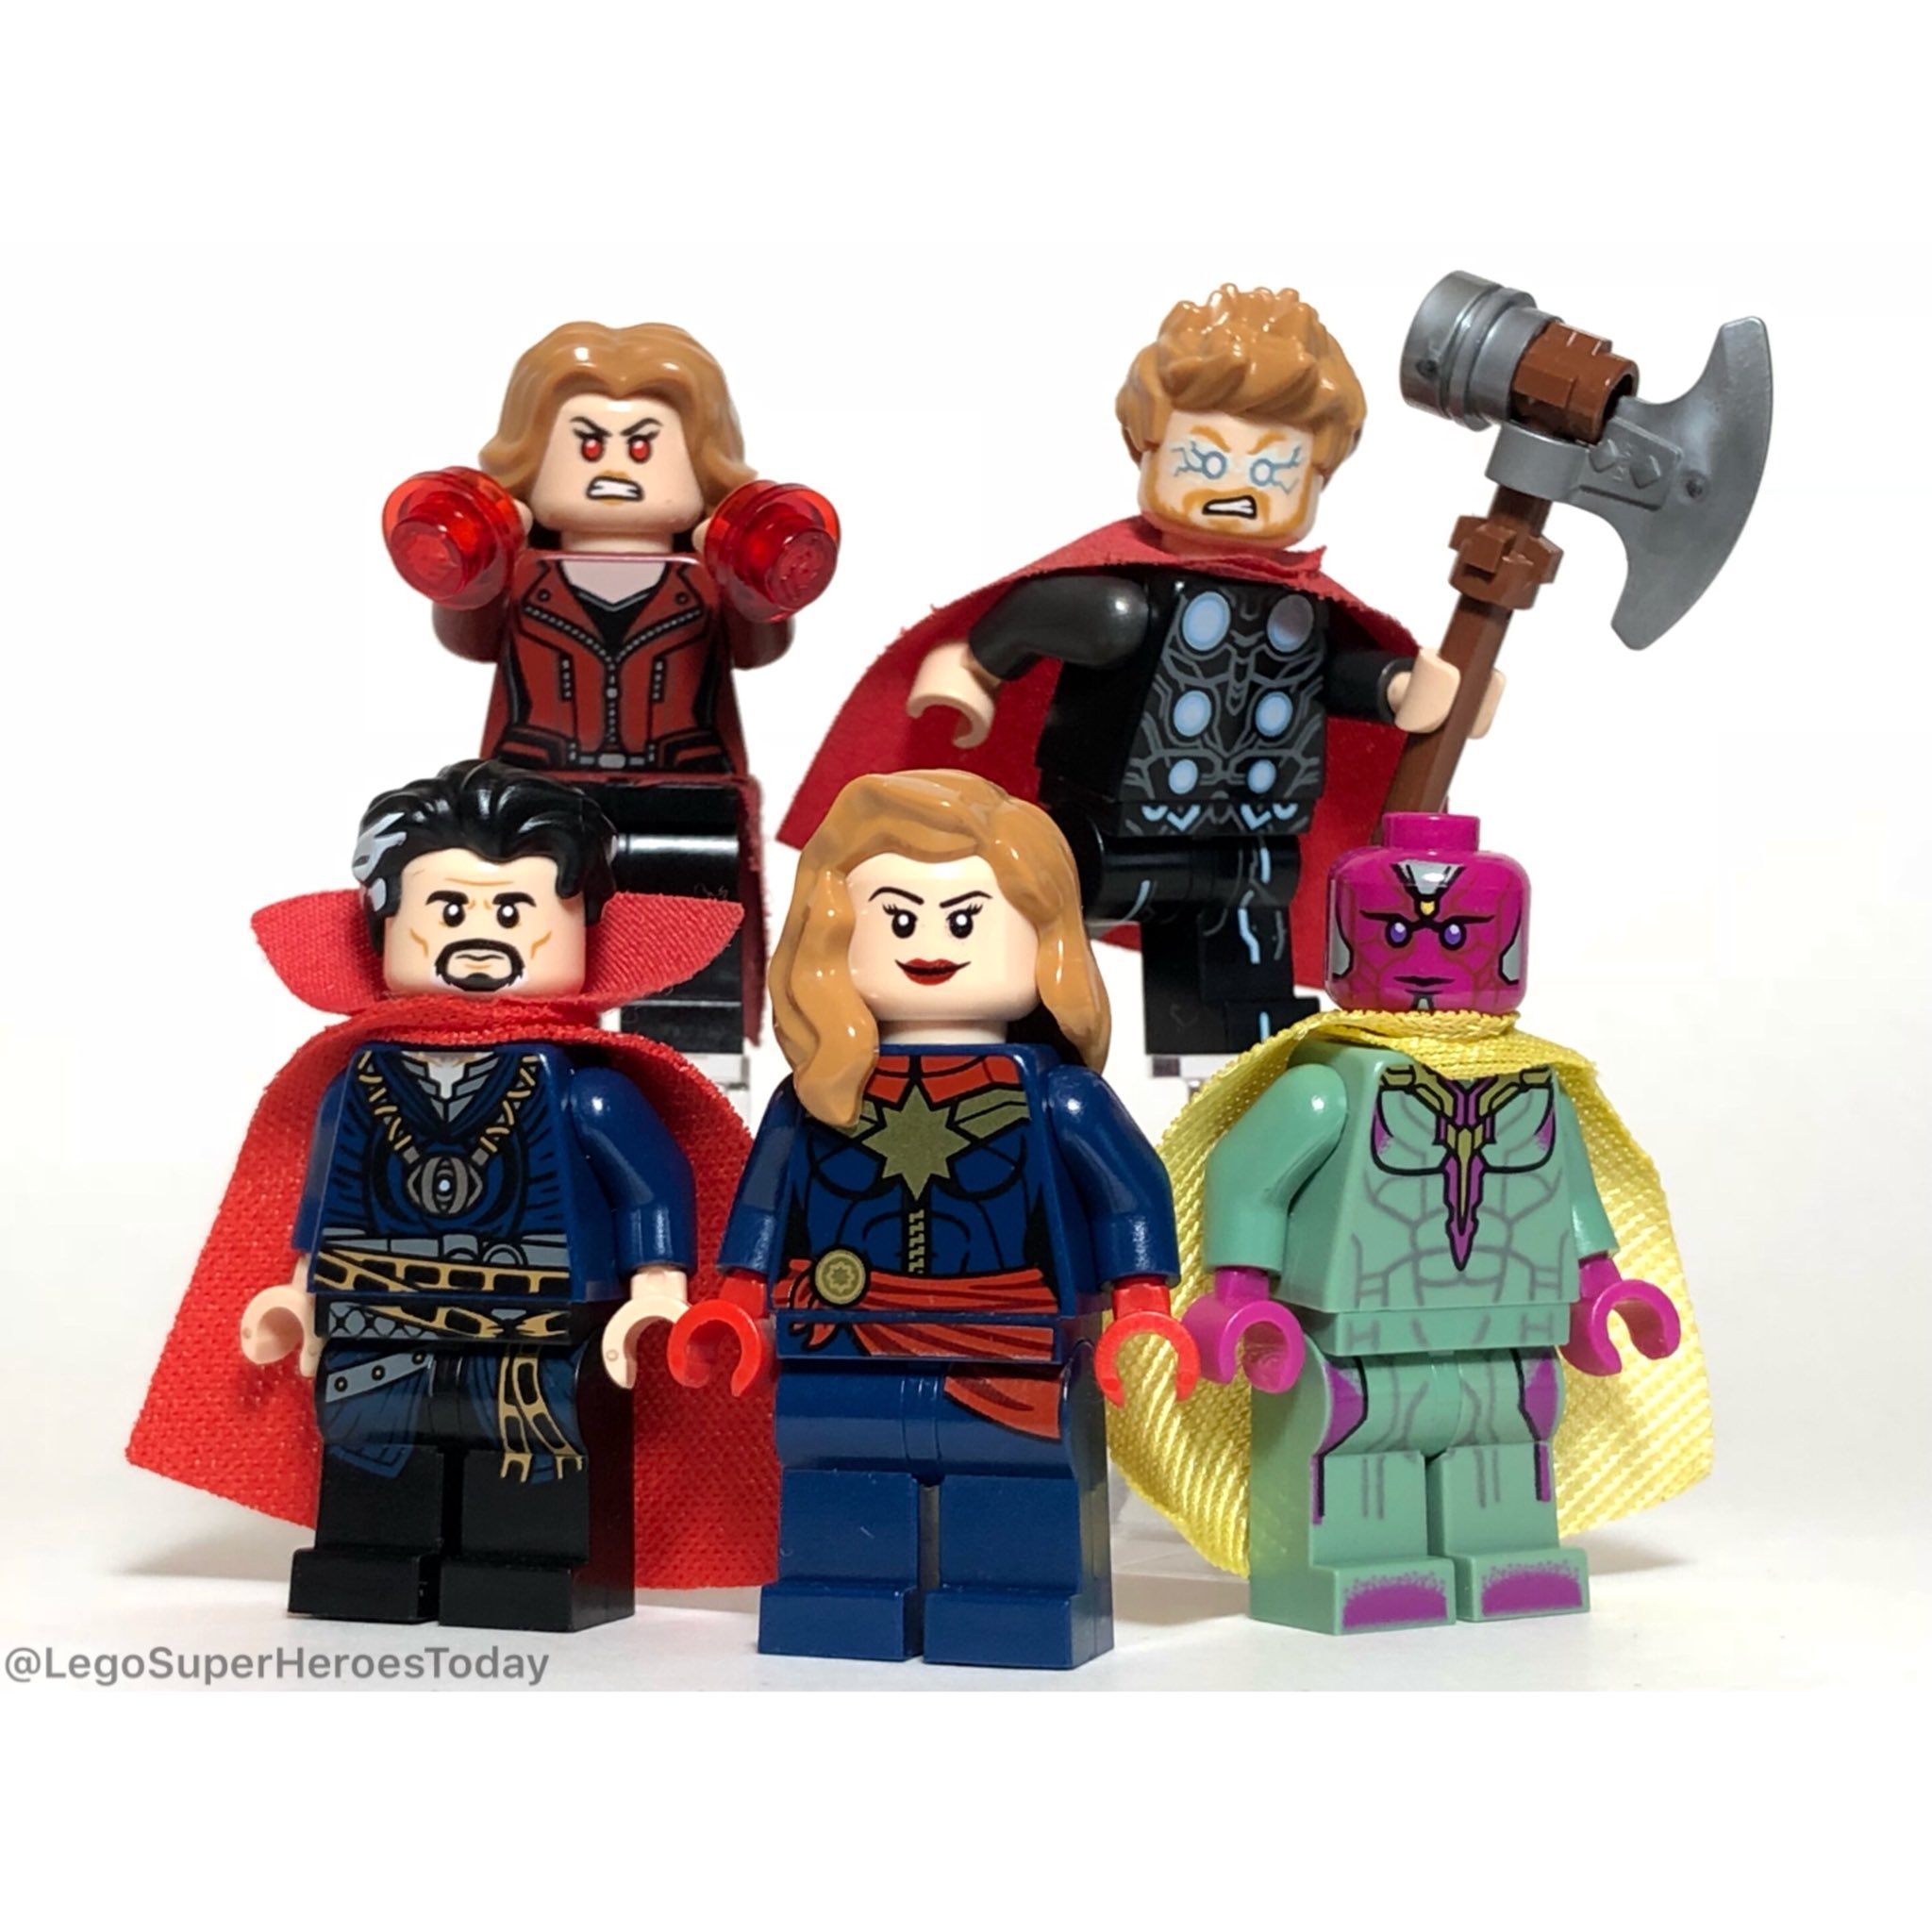 duft Fortryd Høflig MiniSuperHeroesToday on Twitter: "✨ The OP Avengers! ✨ #lego #legomarvel  #mcu #marvel #avengers4 #infinitywar #avengers #scarletwitch #doctorstrange  #vision #thor #captainmarvel #brielarson https://t.co/wXnVXhzmye" / Twitter